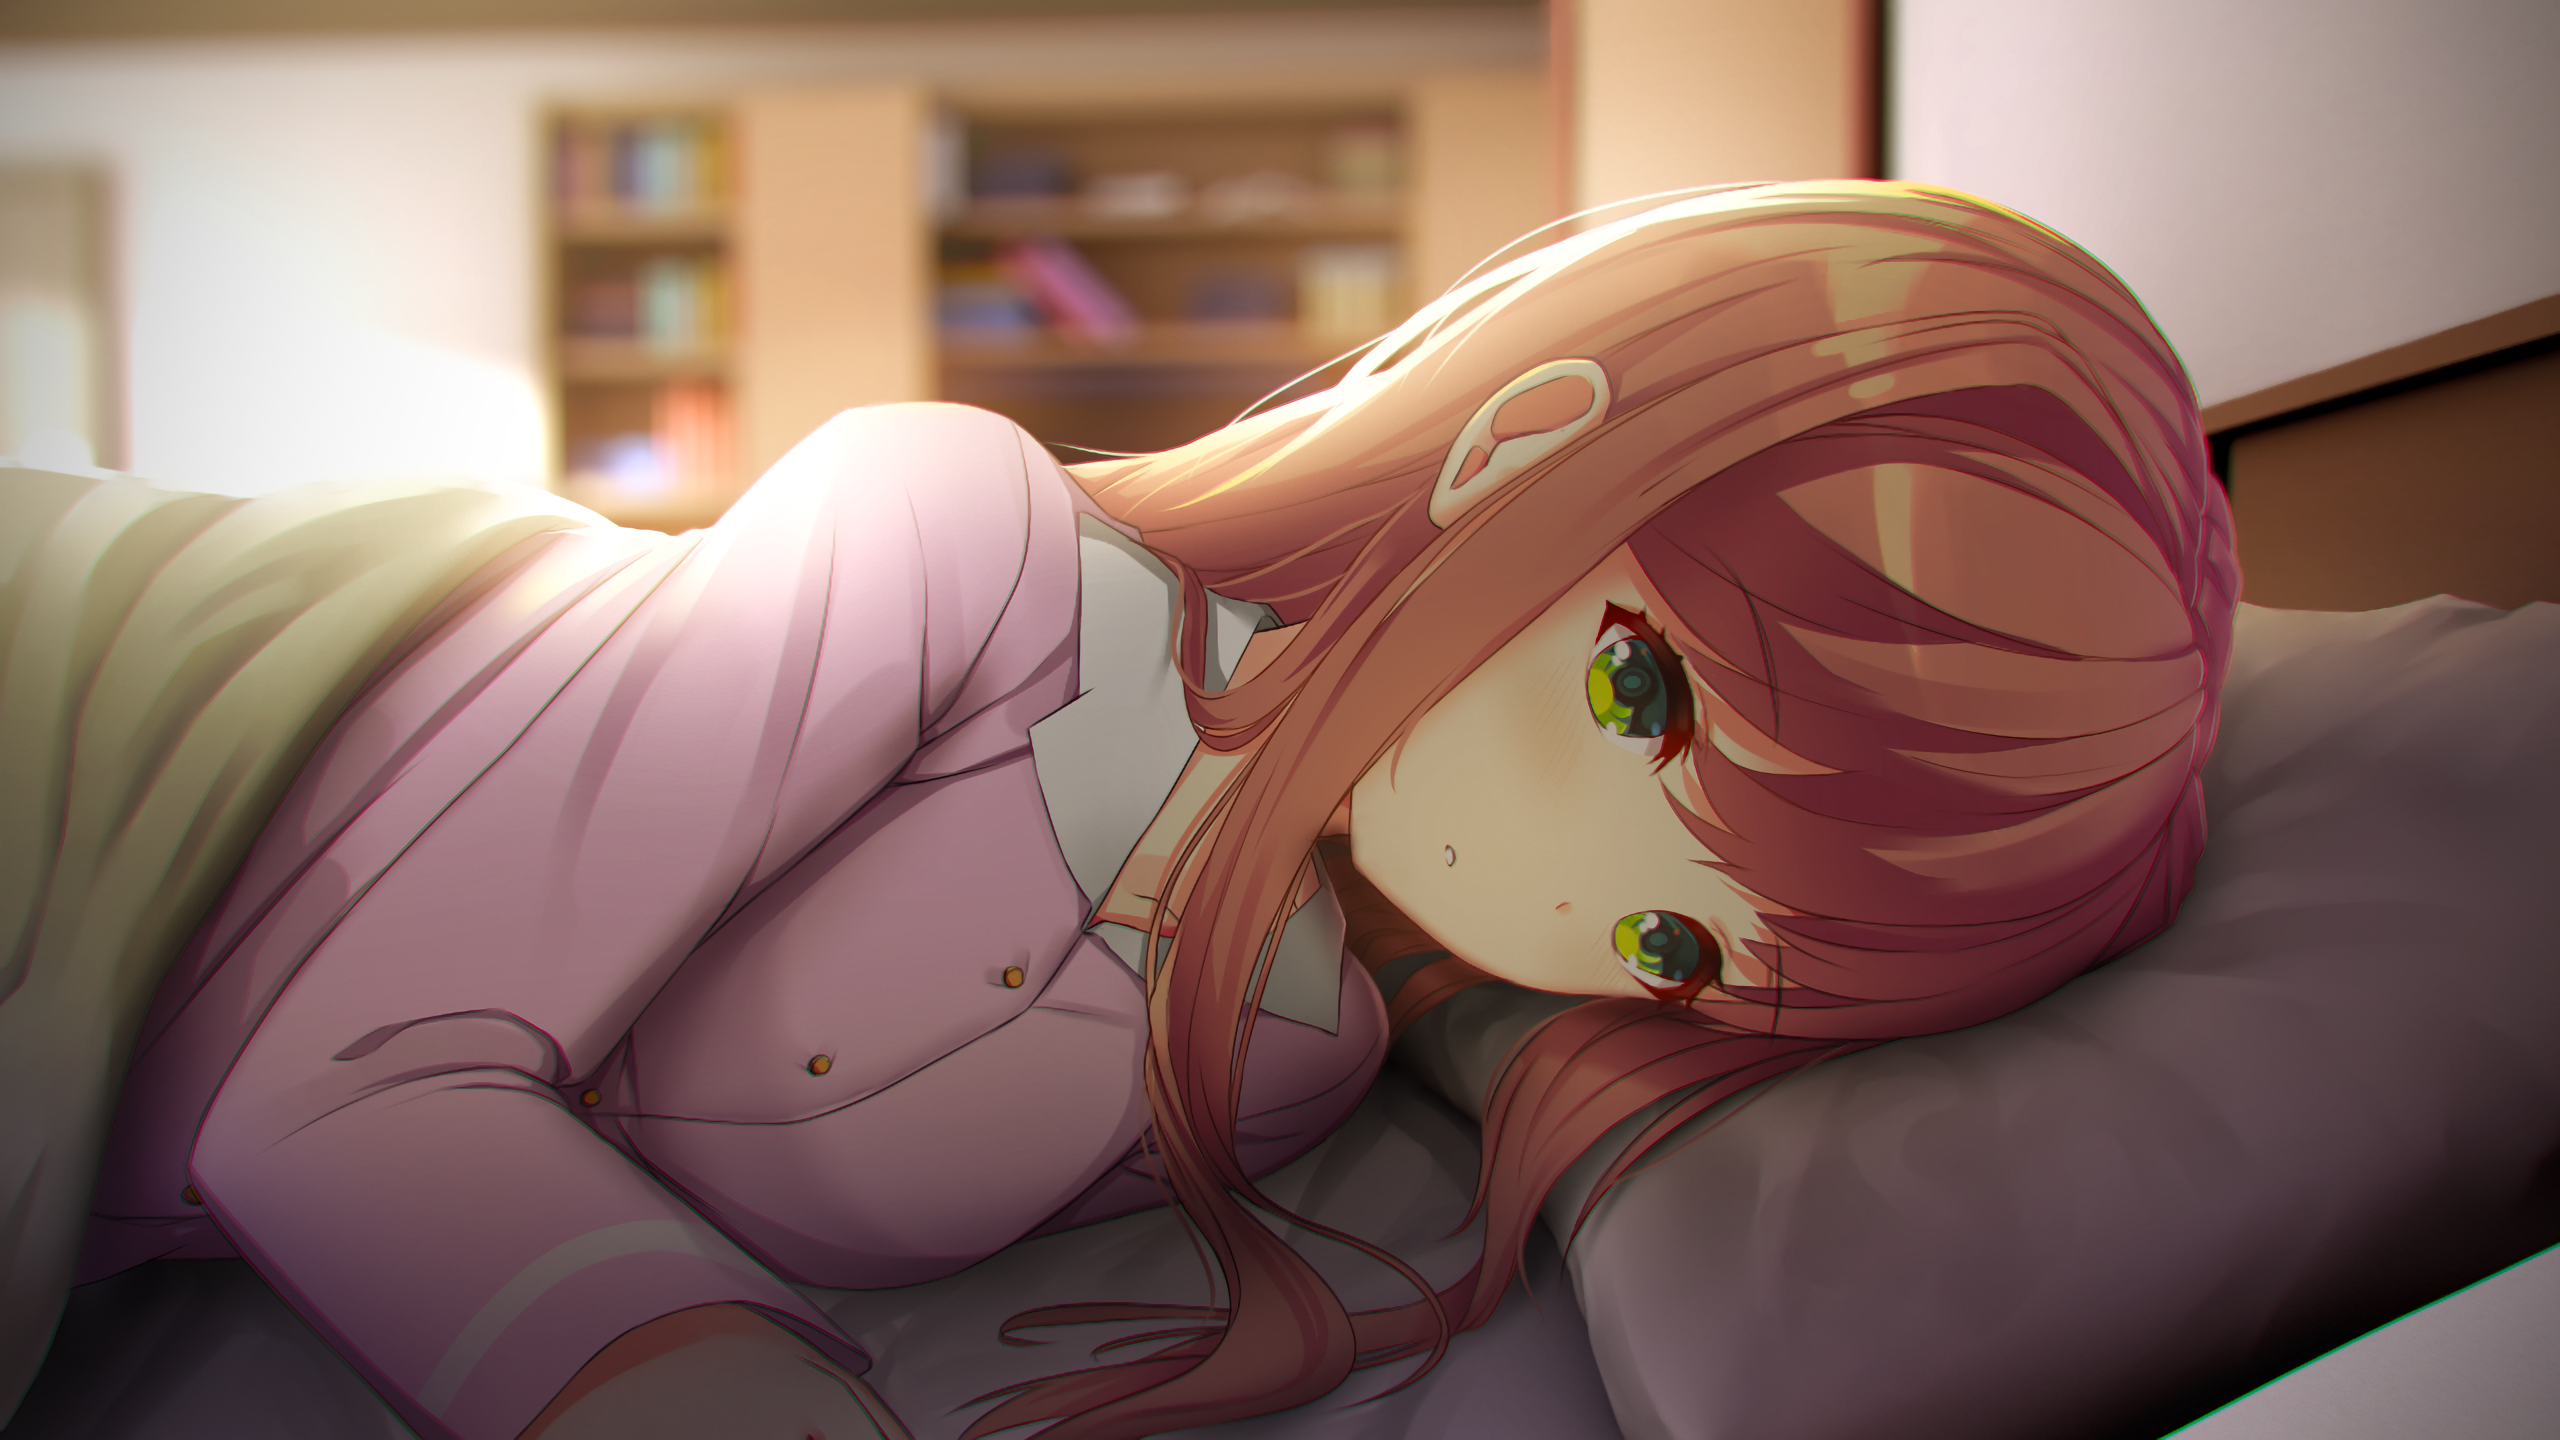 Anime 2560x1440 Doki Doki Literature Club Monika (Doki Doki Literature Club) in bed anime girls green eyes sheets